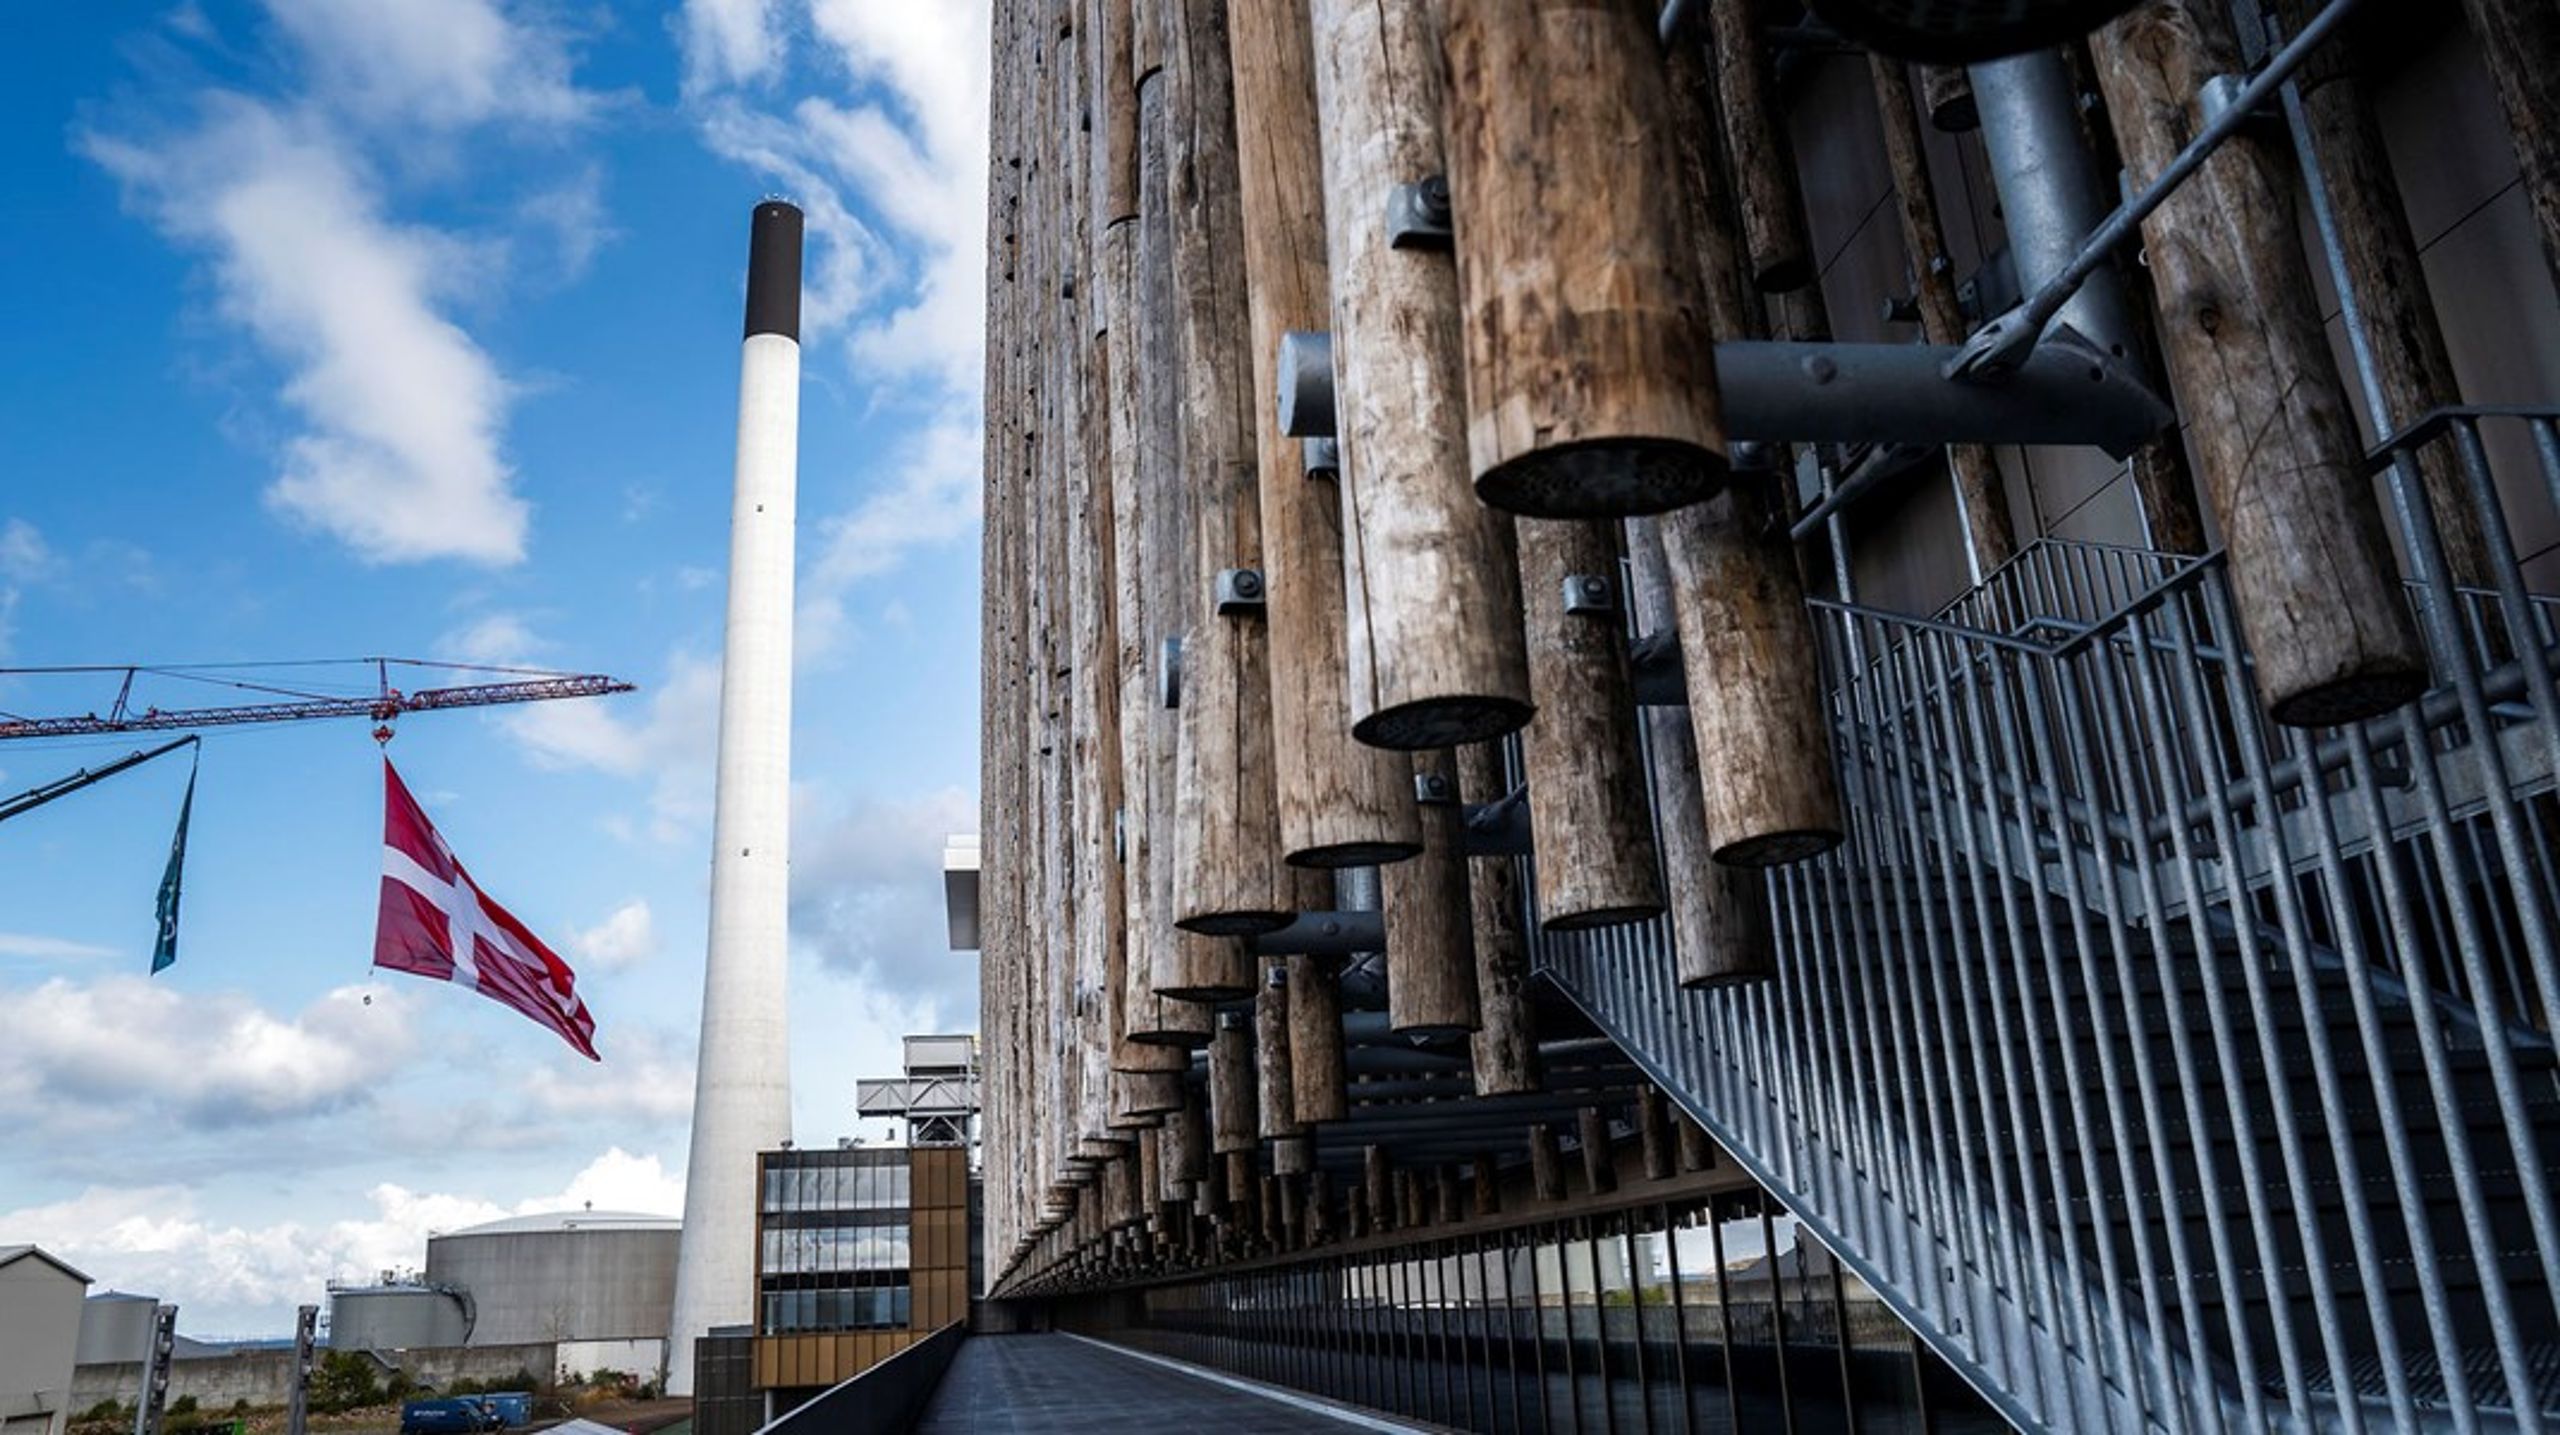 Afbrænding af træ bør ikke benævnes vedvarende energi, og muligheden for at statsstøtte bør afvikles, skriver XXXX. Her&nbsp;Københavns nye biomassefyrede kraftvarmeværk, indviet august 2020.